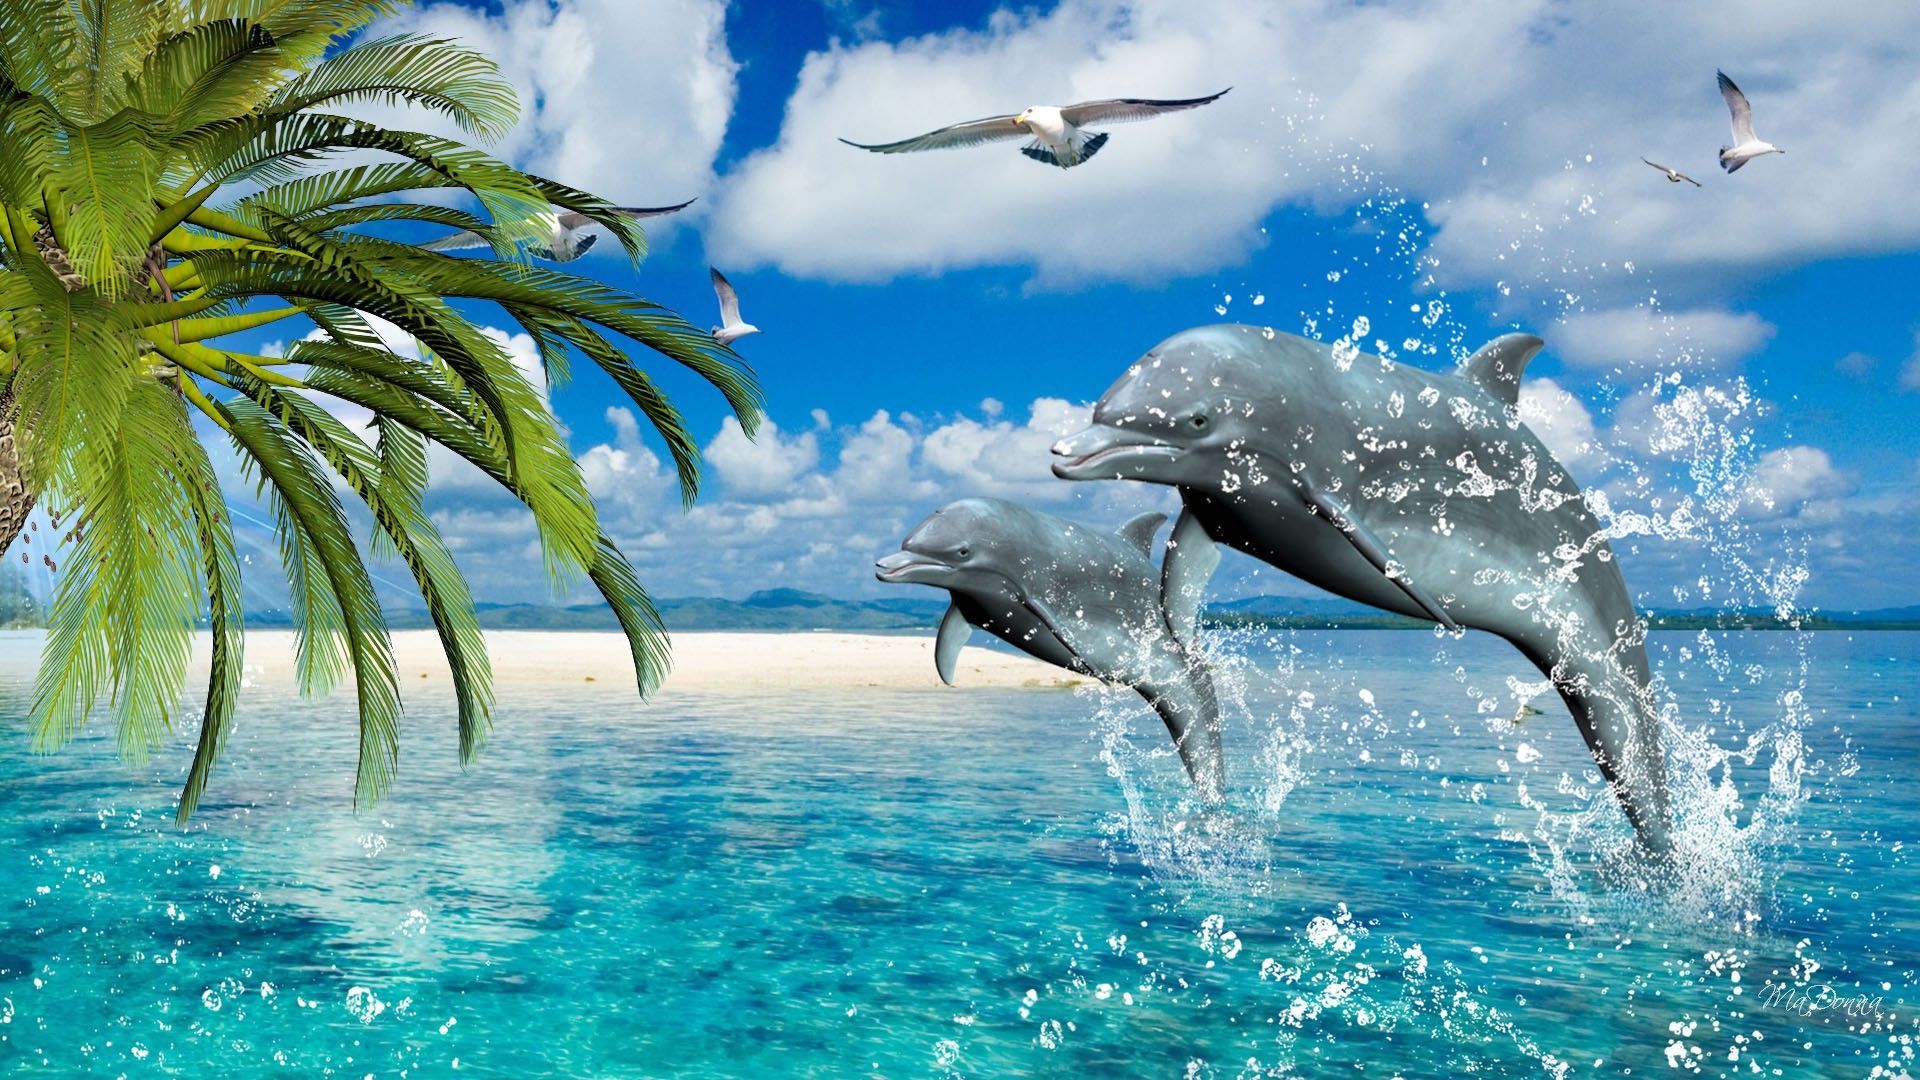 Fondos de delfines | Mejores fondos de pantalla | Dolphin L ♡ VE | Delfines